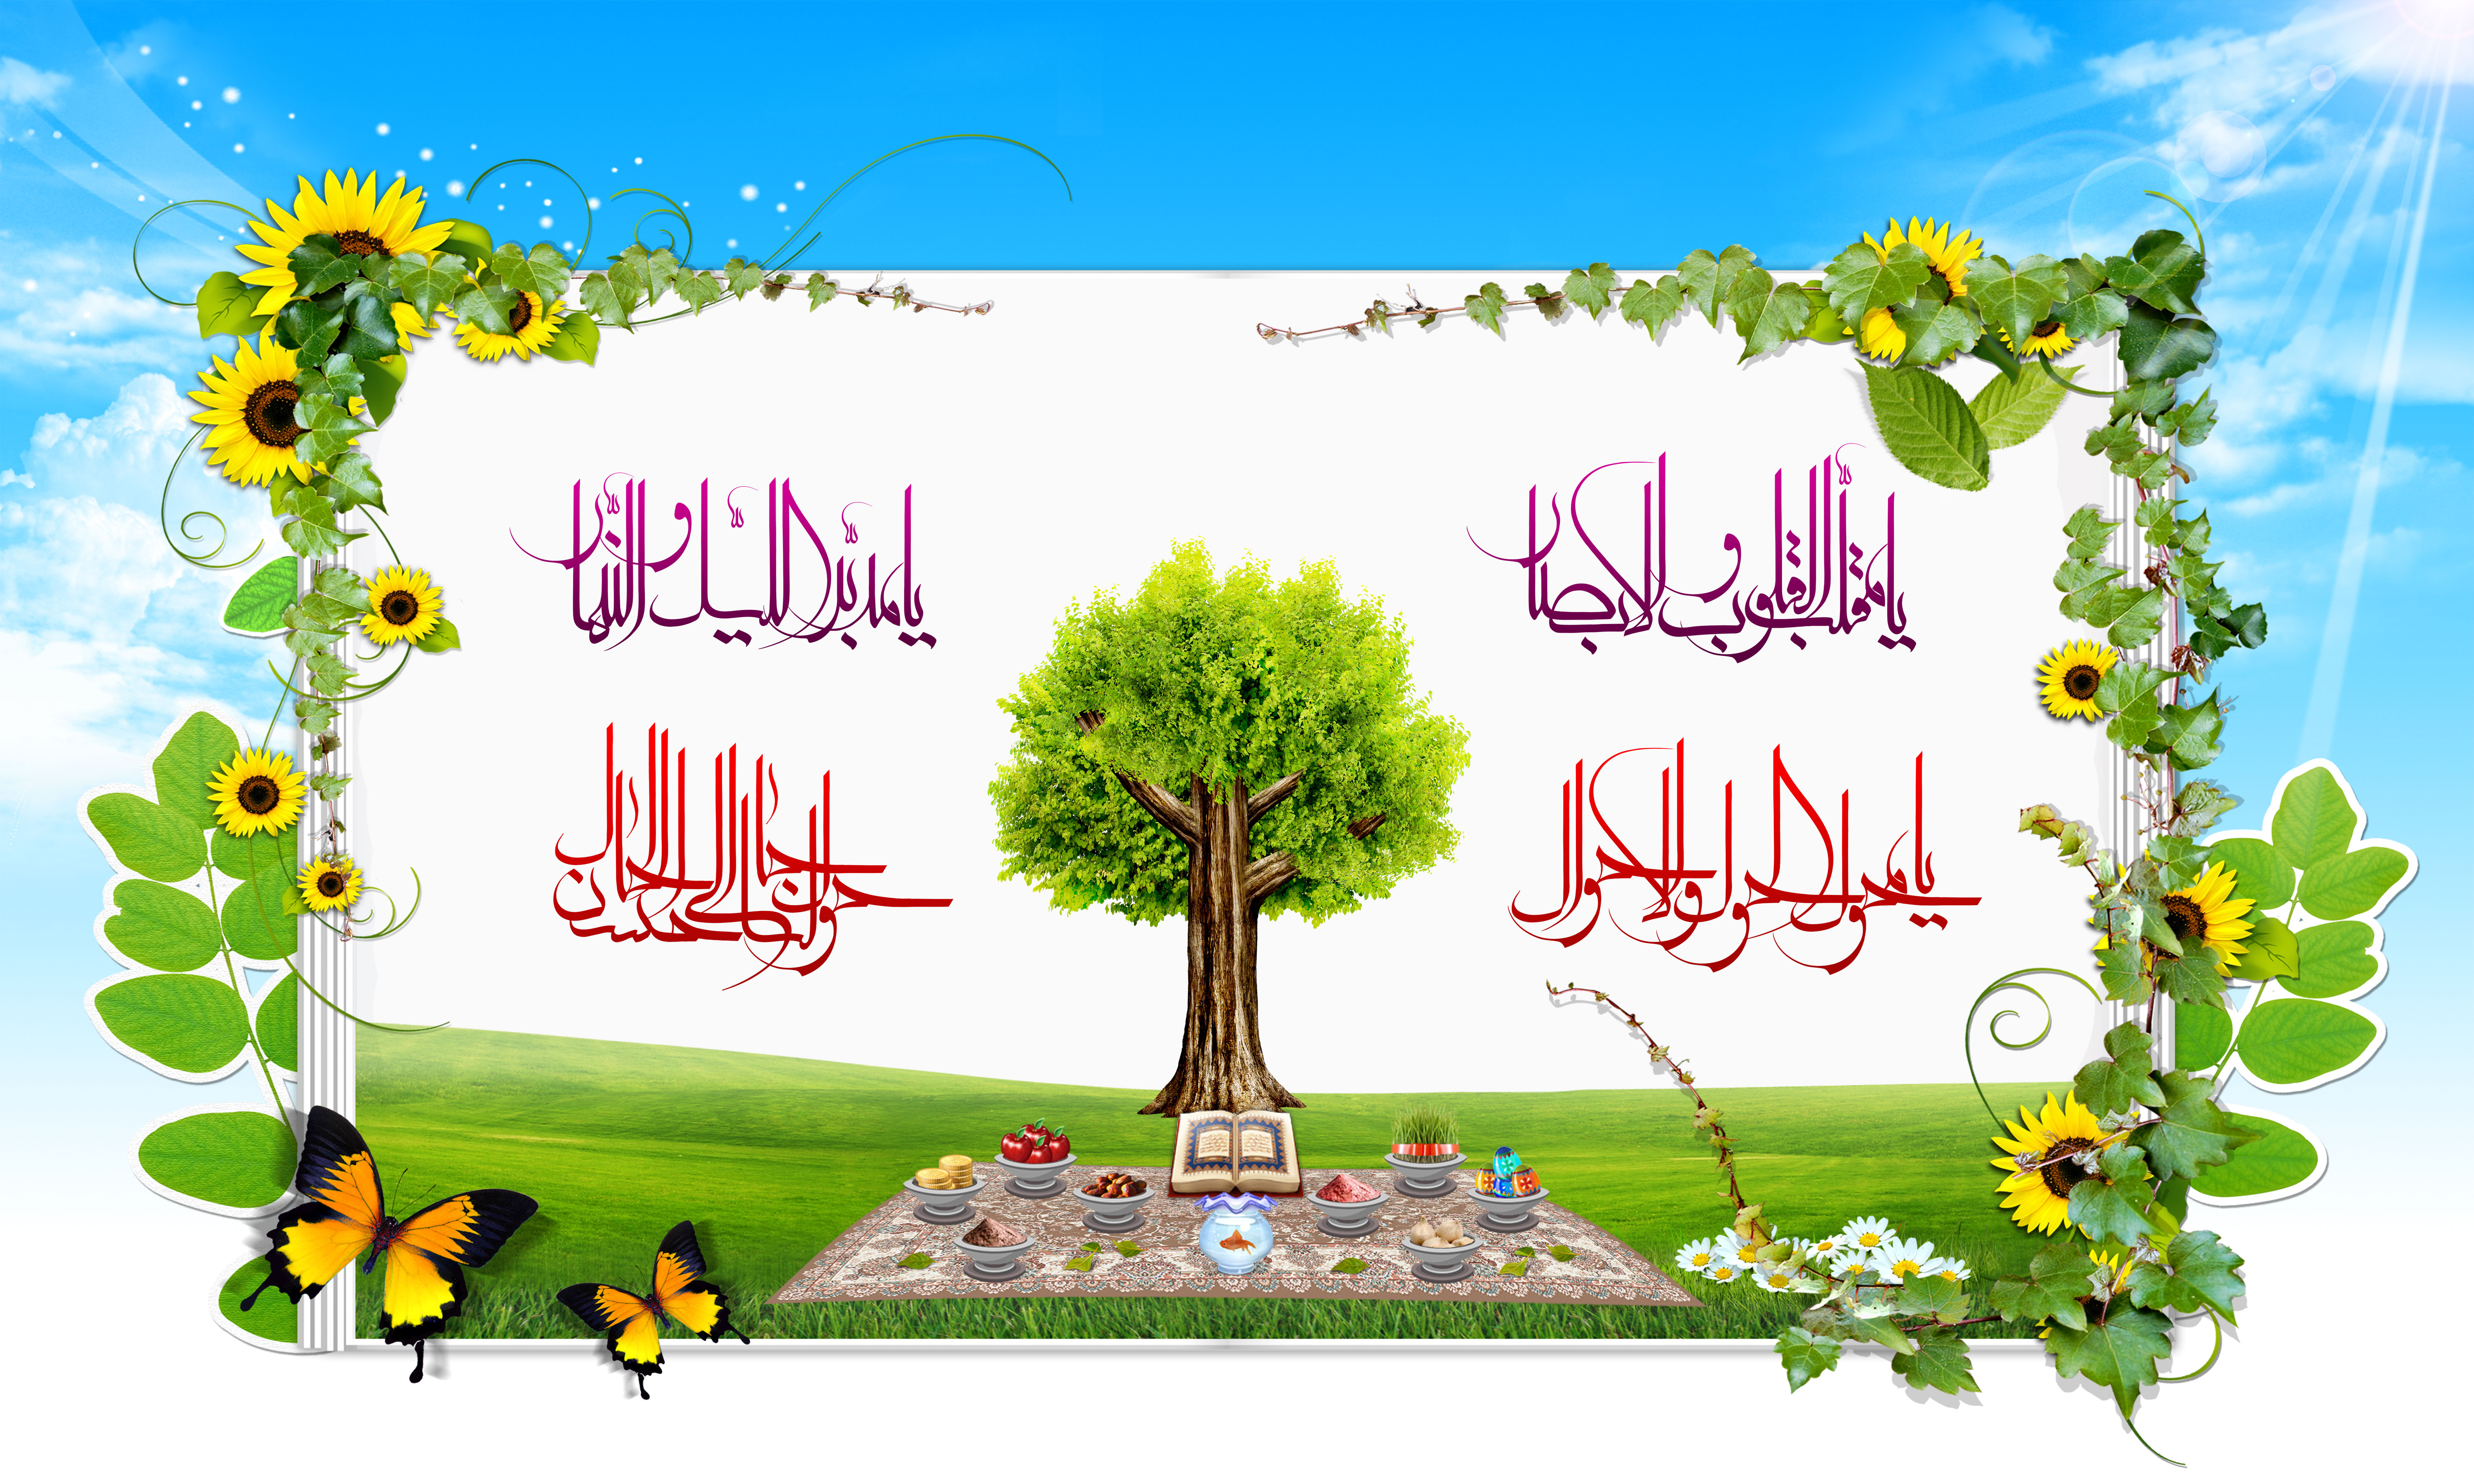 Поздравление с наврузом на азербайджанском языке. Навруз плакат. Навруз иранский праздник. Навруз обои. Навруз символы праздника.